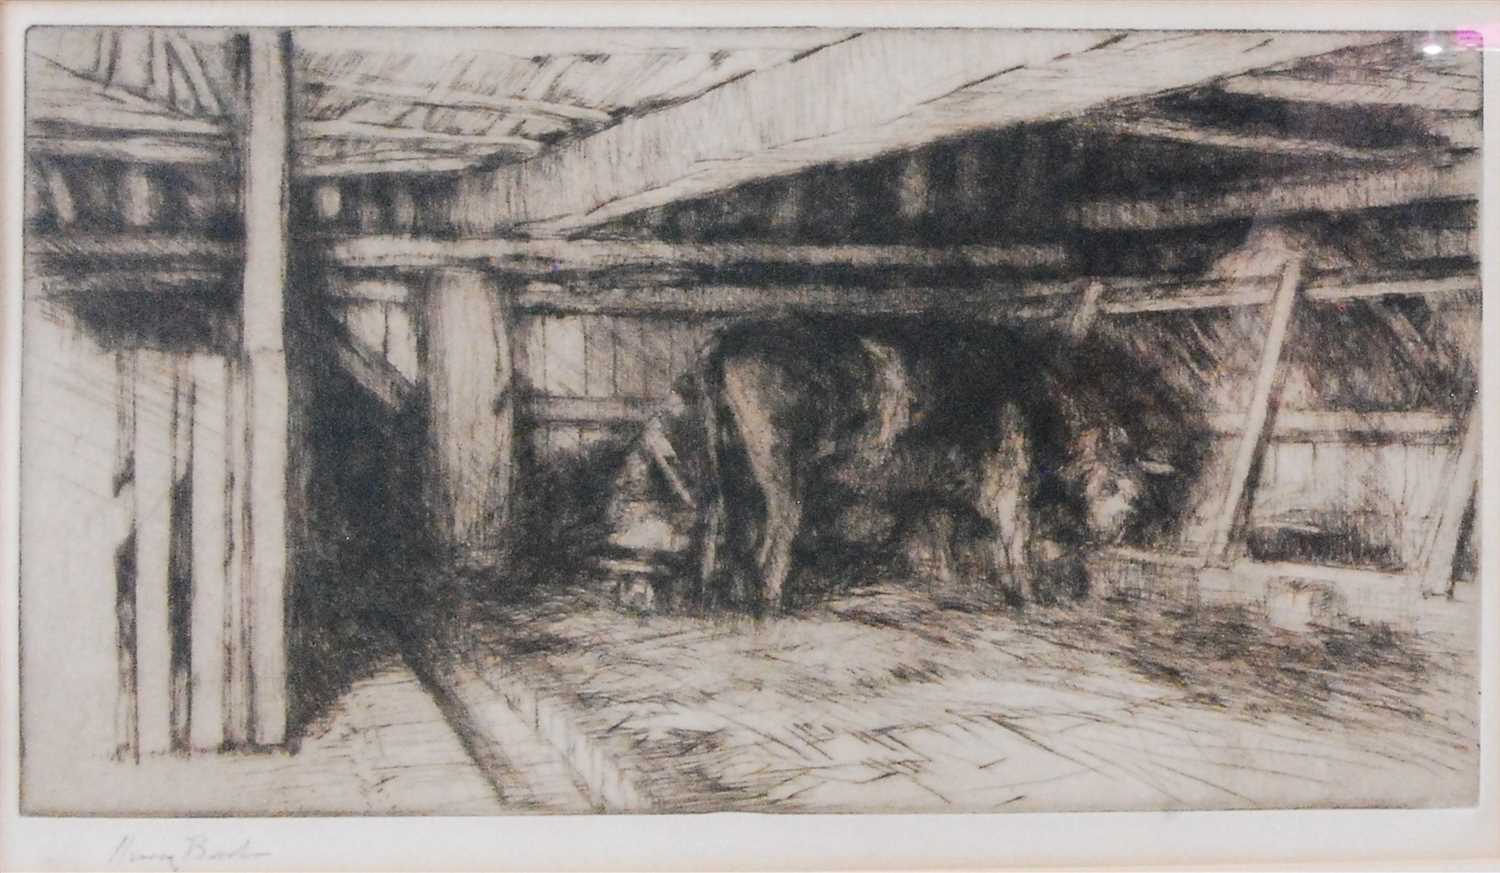 Lot 2390 - Harry Becker (1865-1928) - Milking in the barn,...